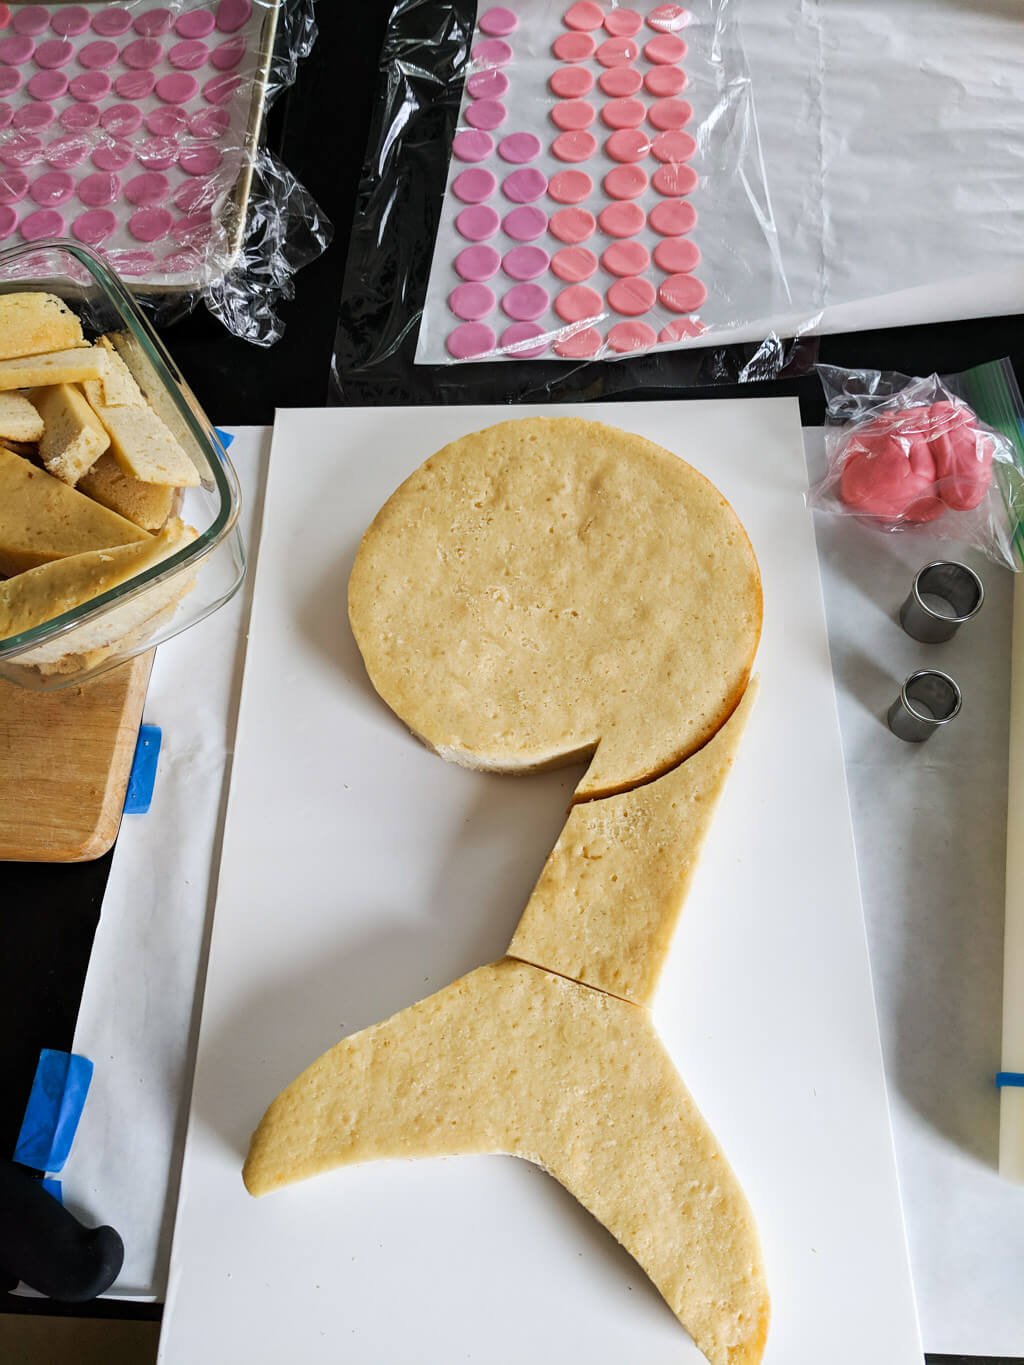 Ausgefallene Kuchen für Kindergeburtstag - Geburtstagstorte Meerjungfrau selber machen